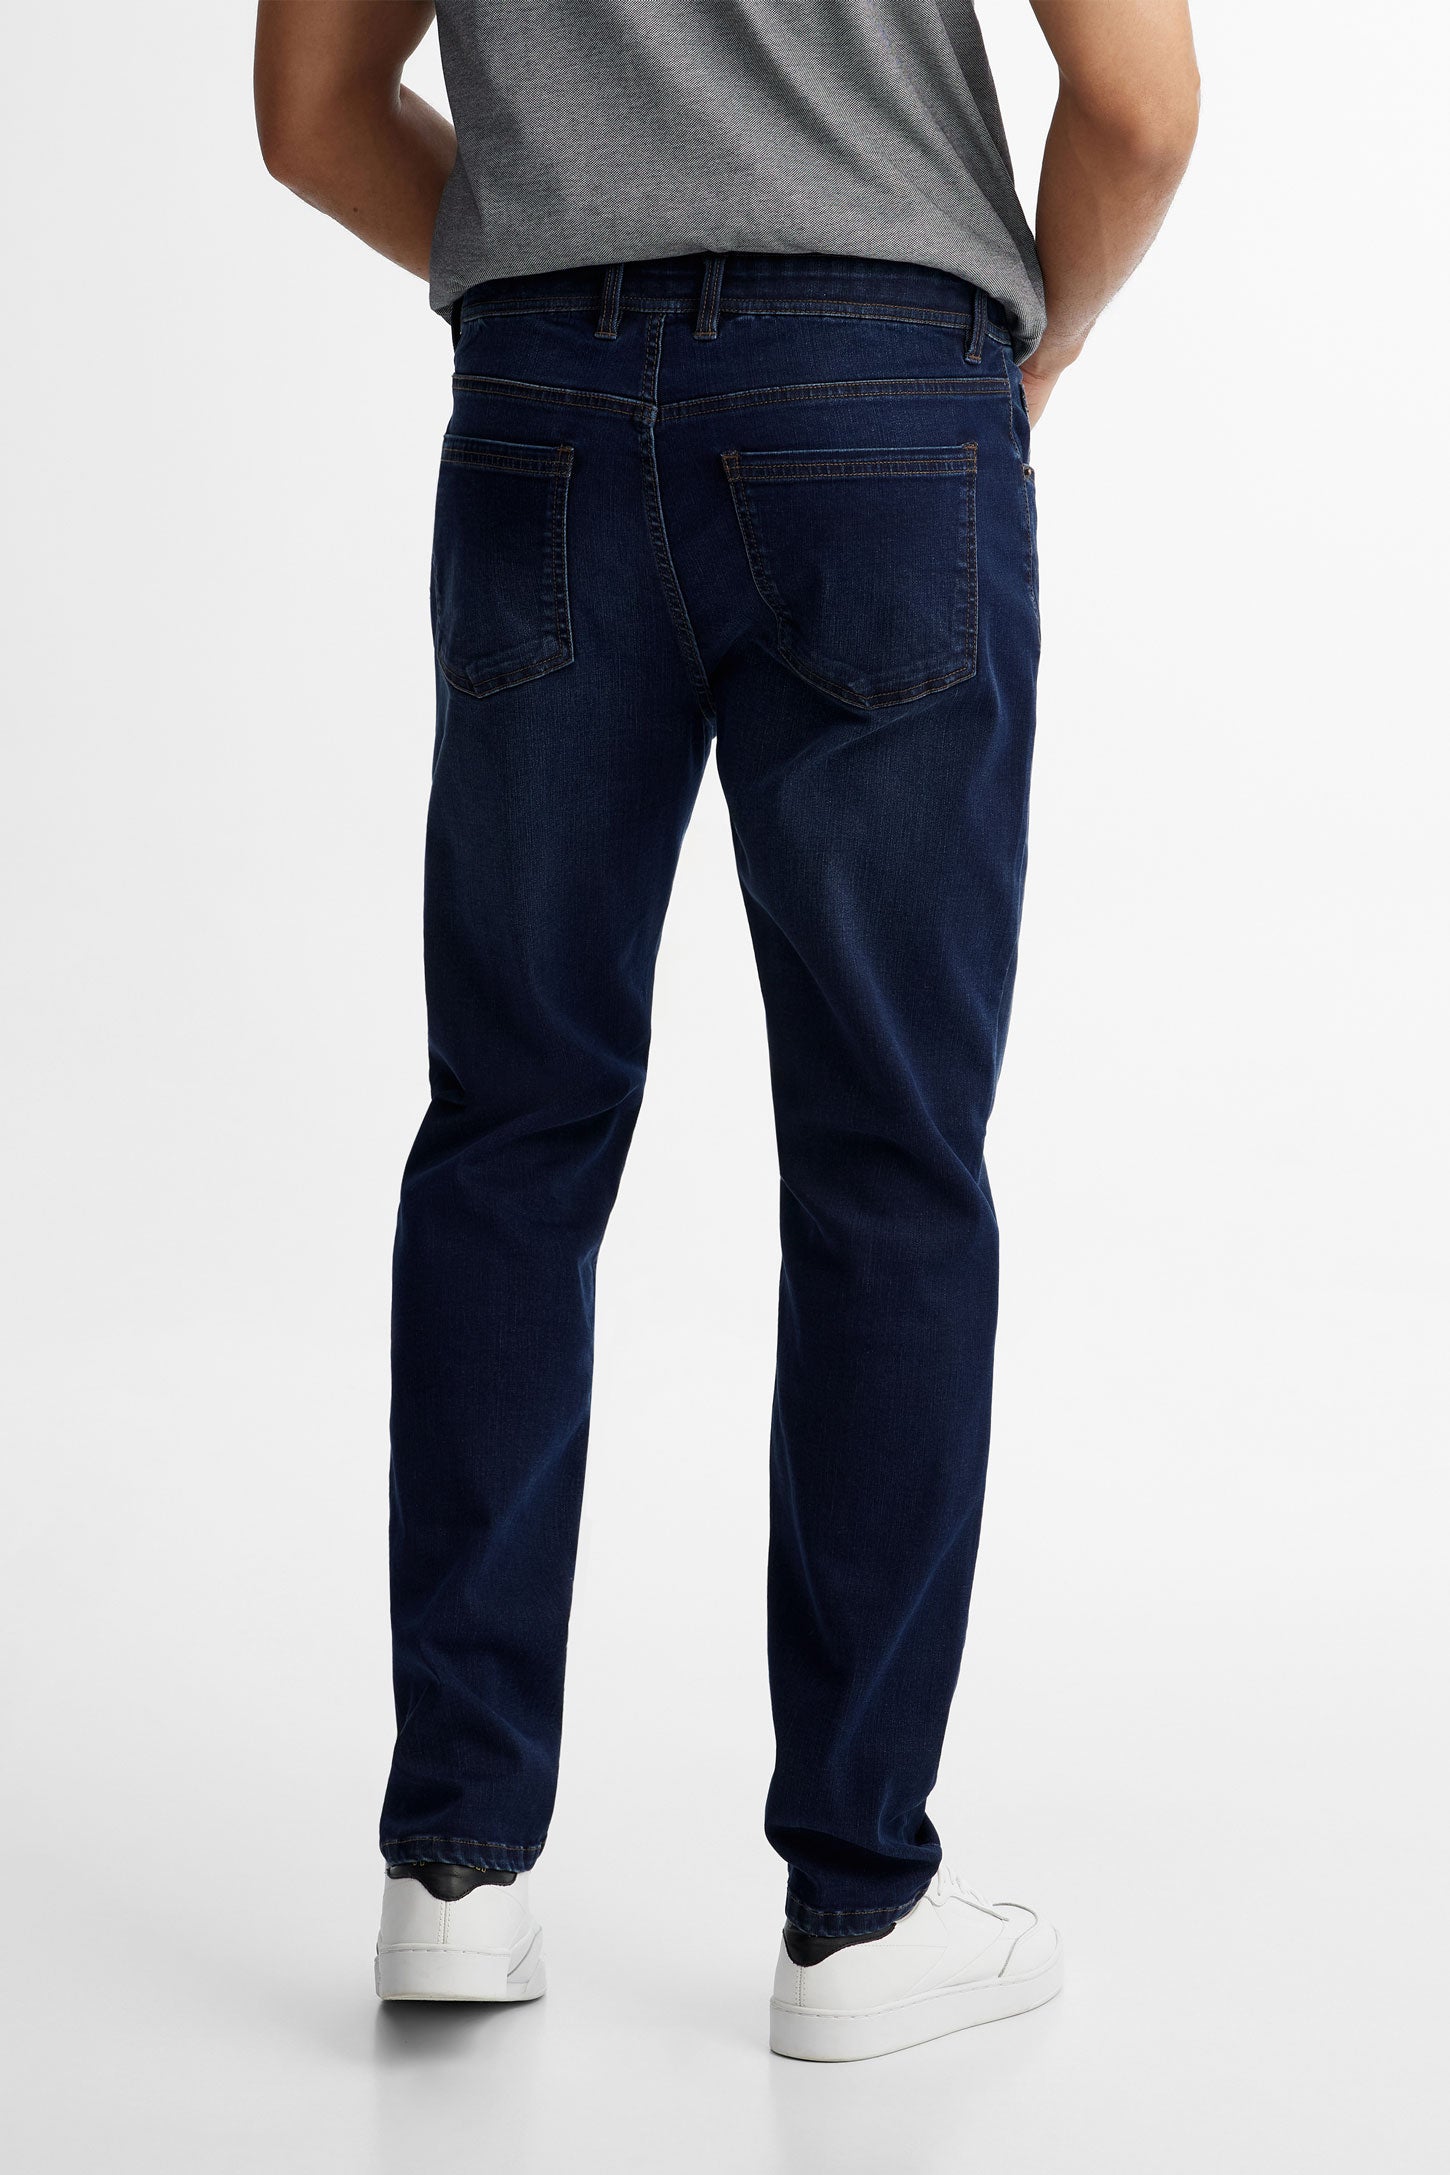 Jeans 5 poches jambe étroite en Lyocell - Homme && BLEU FONCE